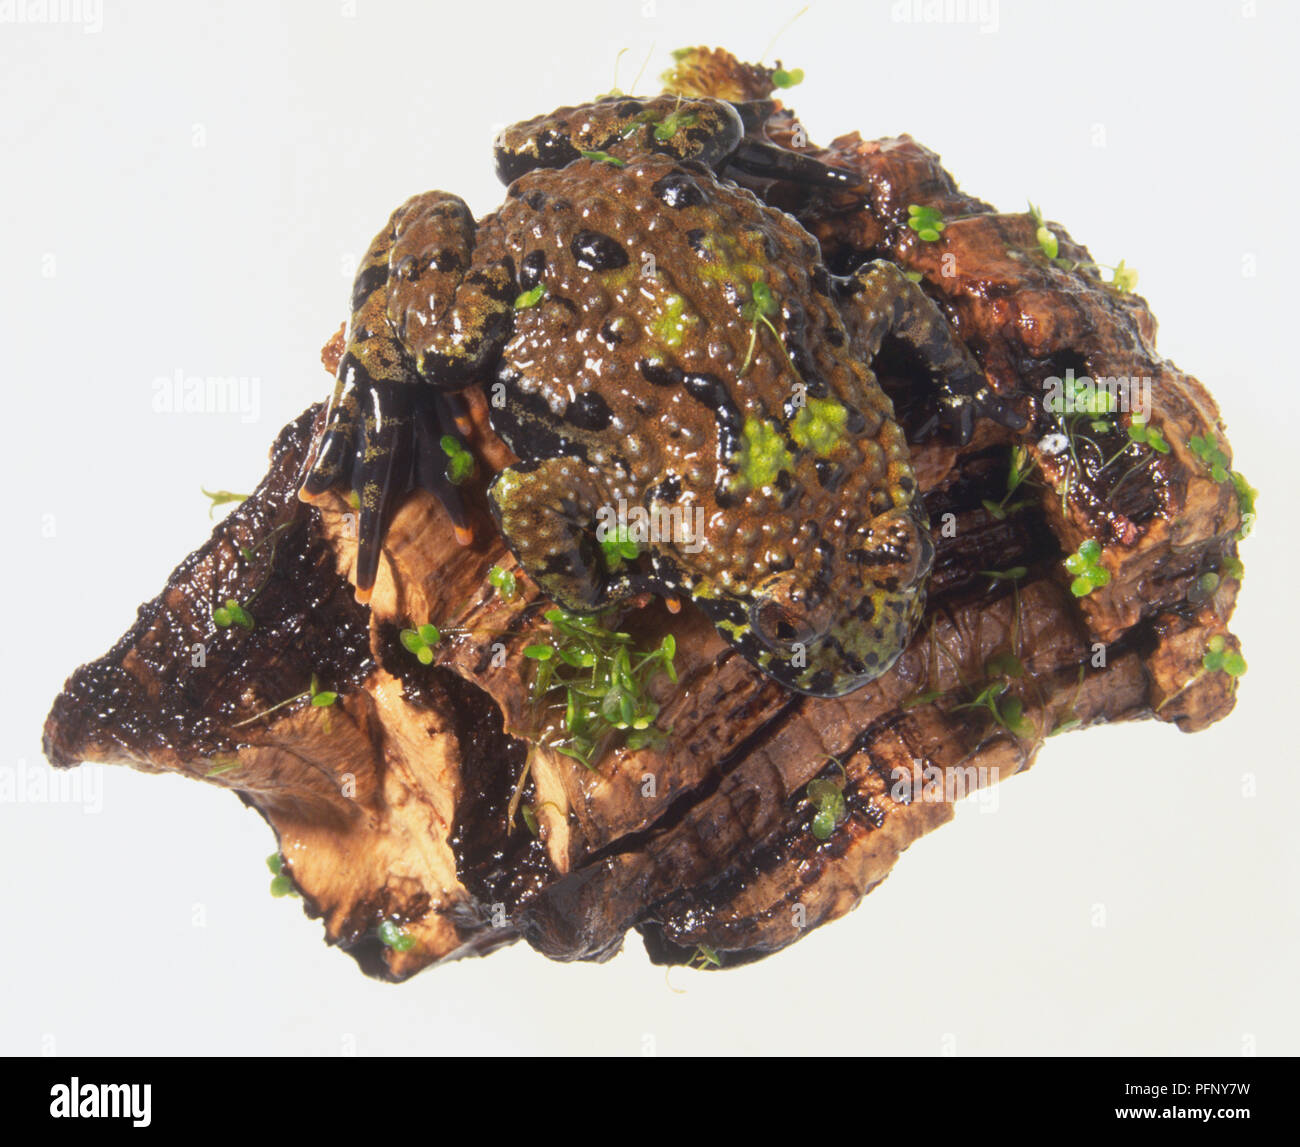 Europeo ventre giallo Toad (Bombina variegata) mimetizzata contro la corteccia Foto Stock